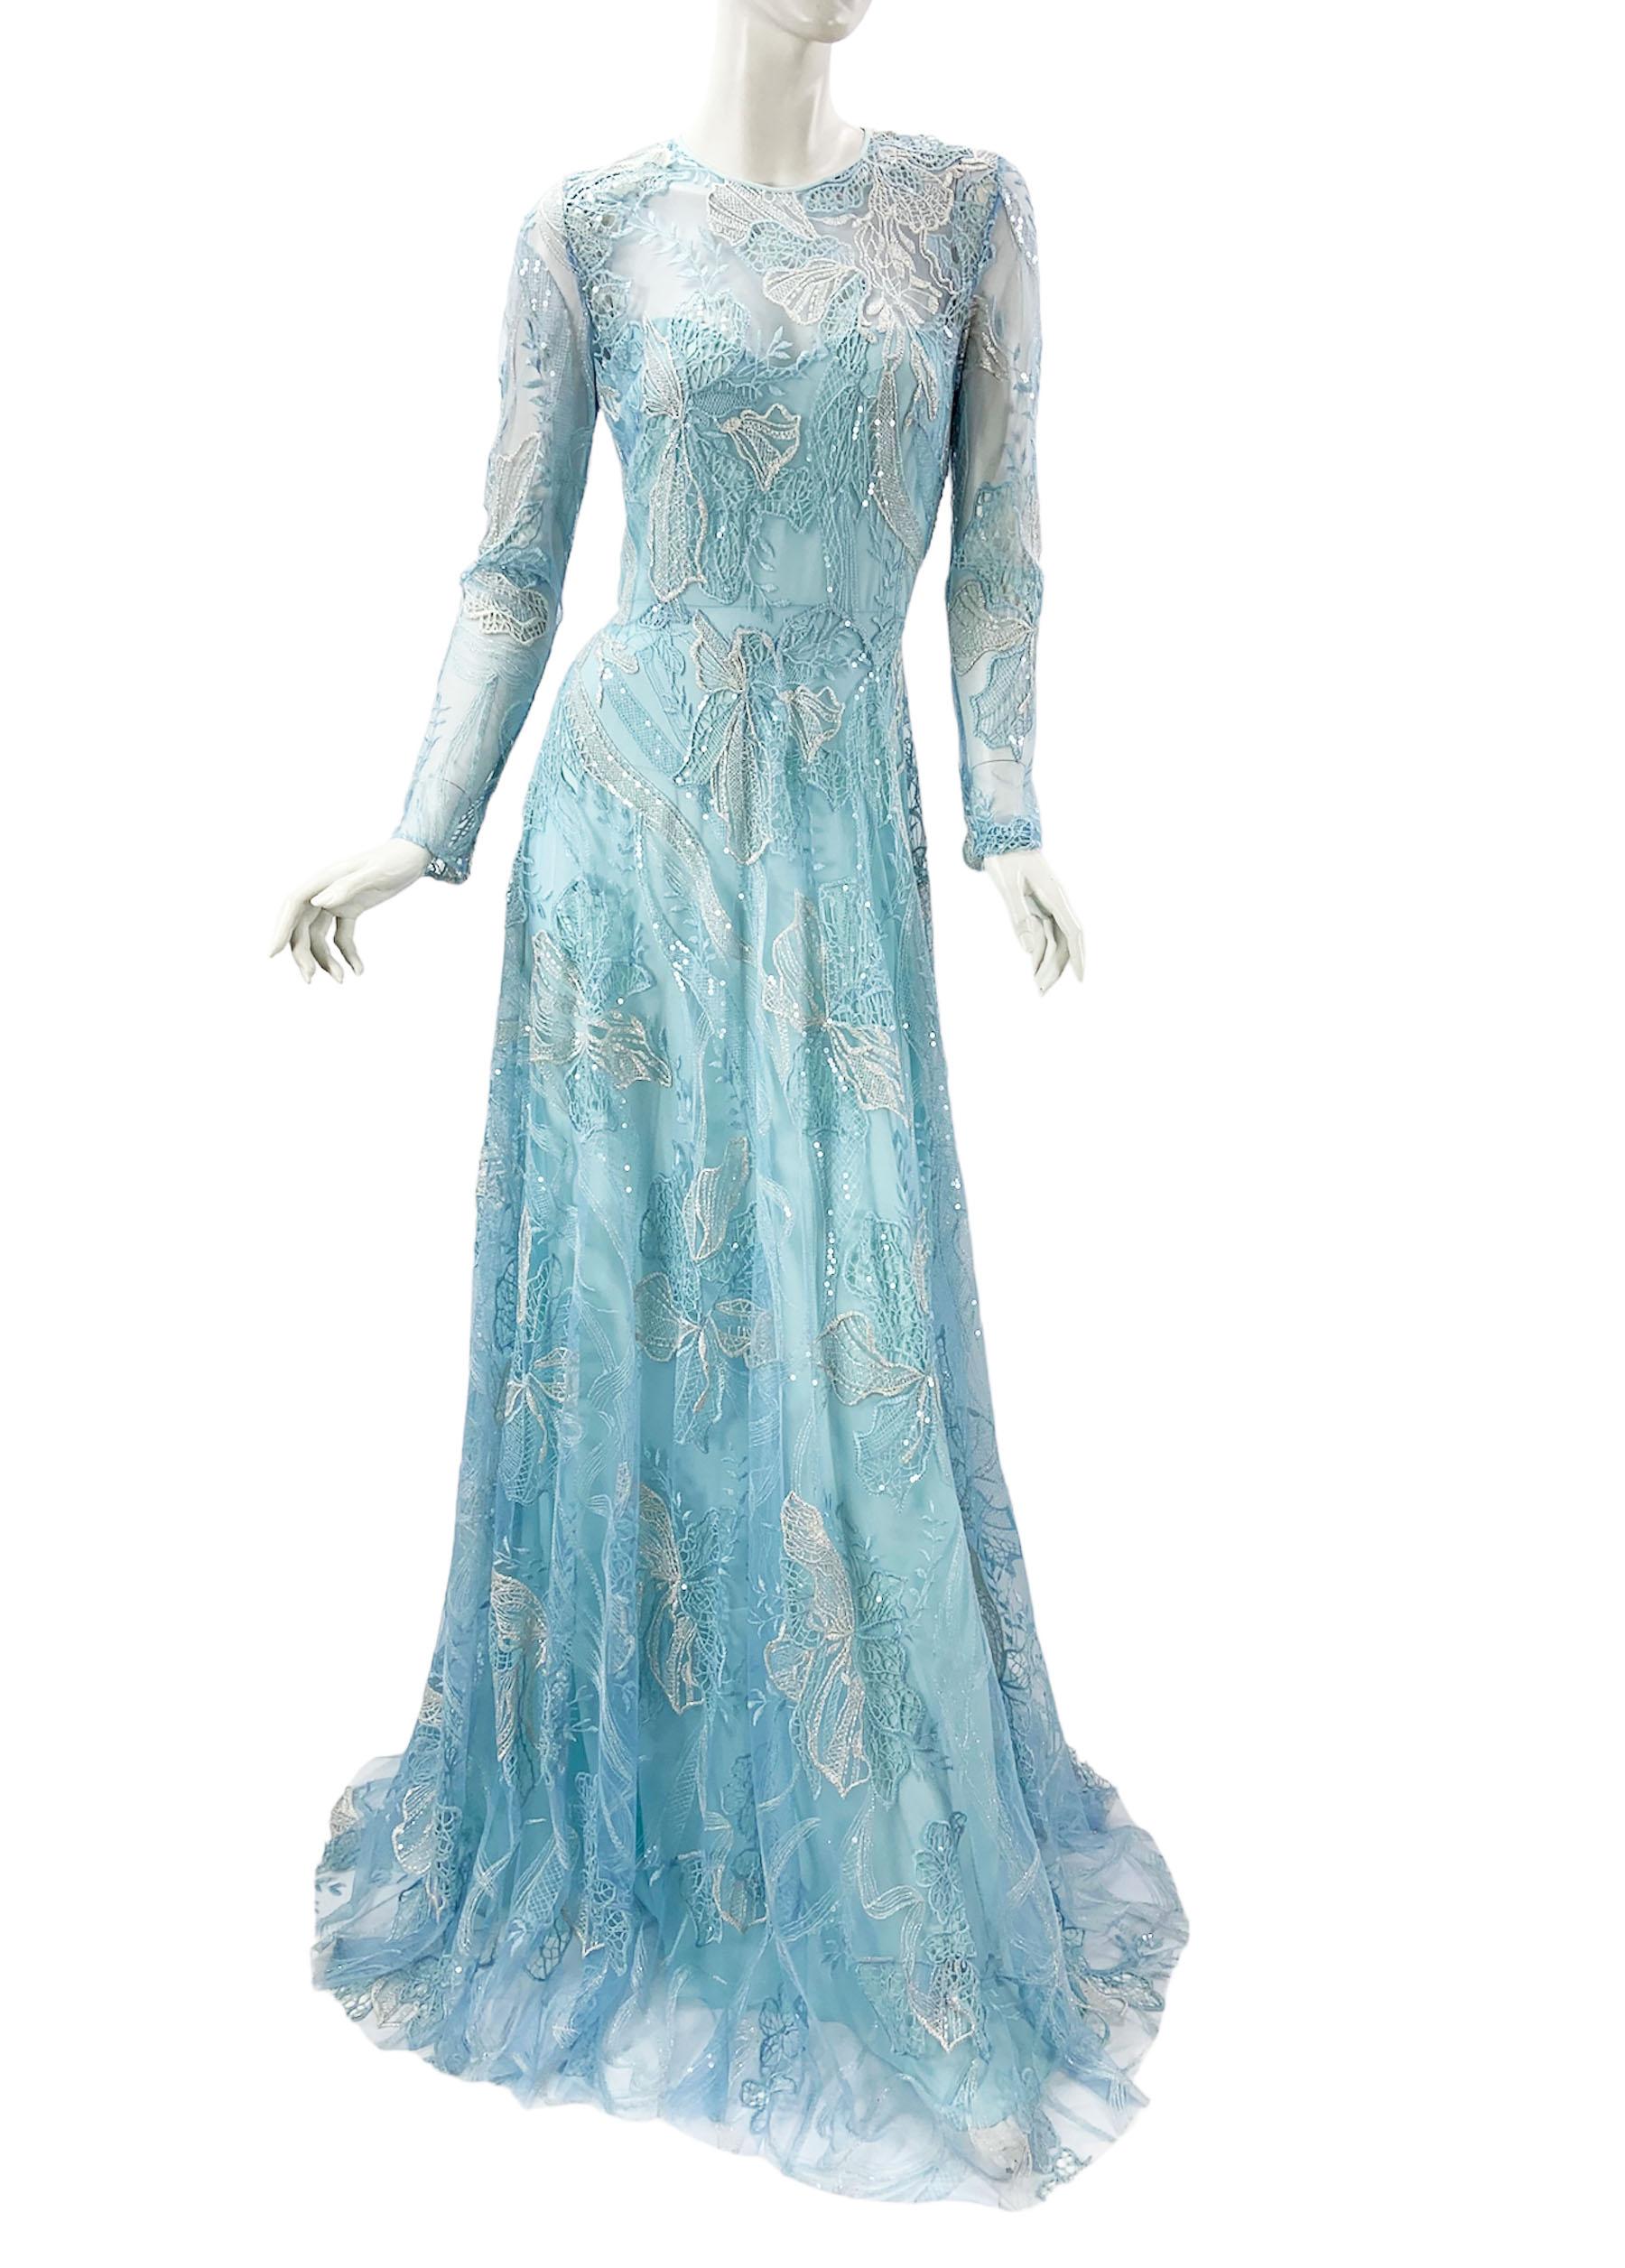 Naeem Khan Blue Lace Embellished Maxi Dress Gown (Robe longue avec ornements en dentelle)
Taille US - 4
Tulle bleu agrémenté de broderies florales blanches/argentées métallisées et bleues, de paillettes transparentes.
Entièrement doublé de soie,